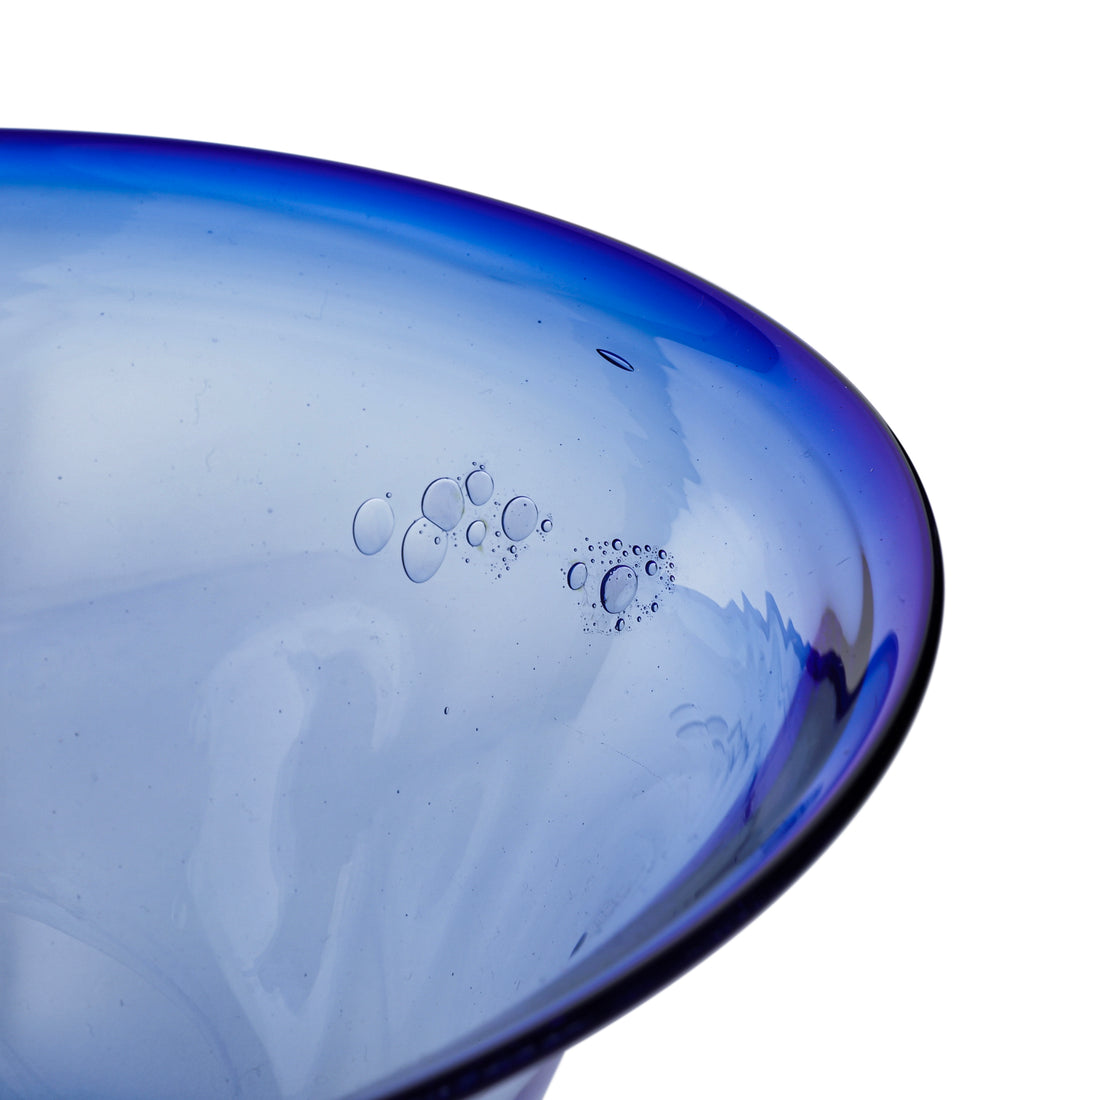 CLARK GUETTEL Blue Art Glass Bowl